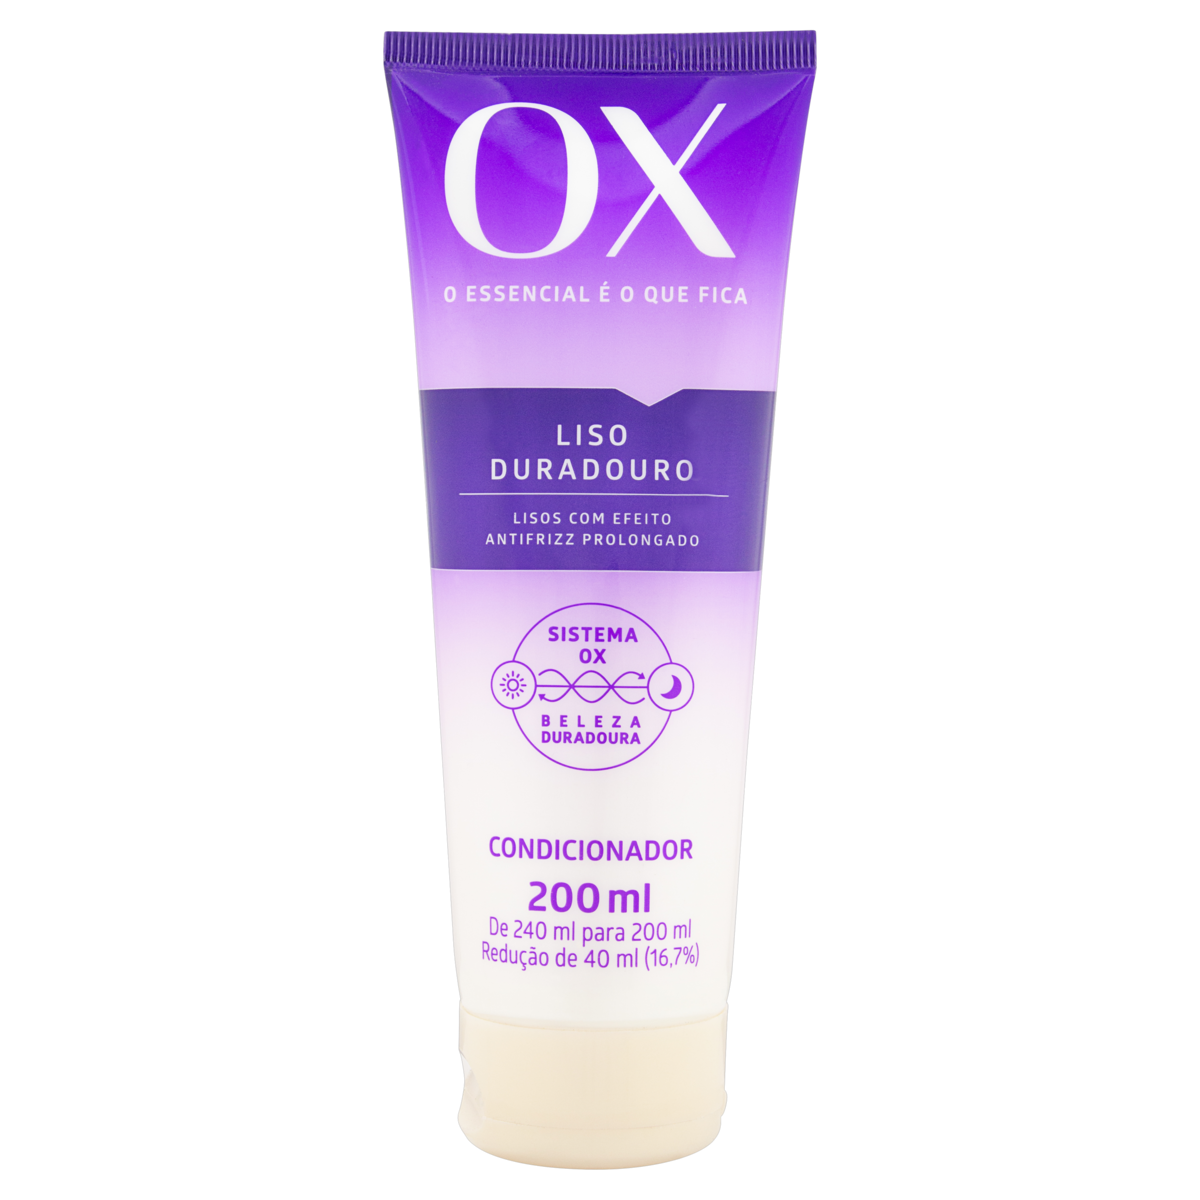 Kit OX Shampoo + Condicionador + Creme de Pentear Fibers Cachos Controlados  - Drogarias Pacheco